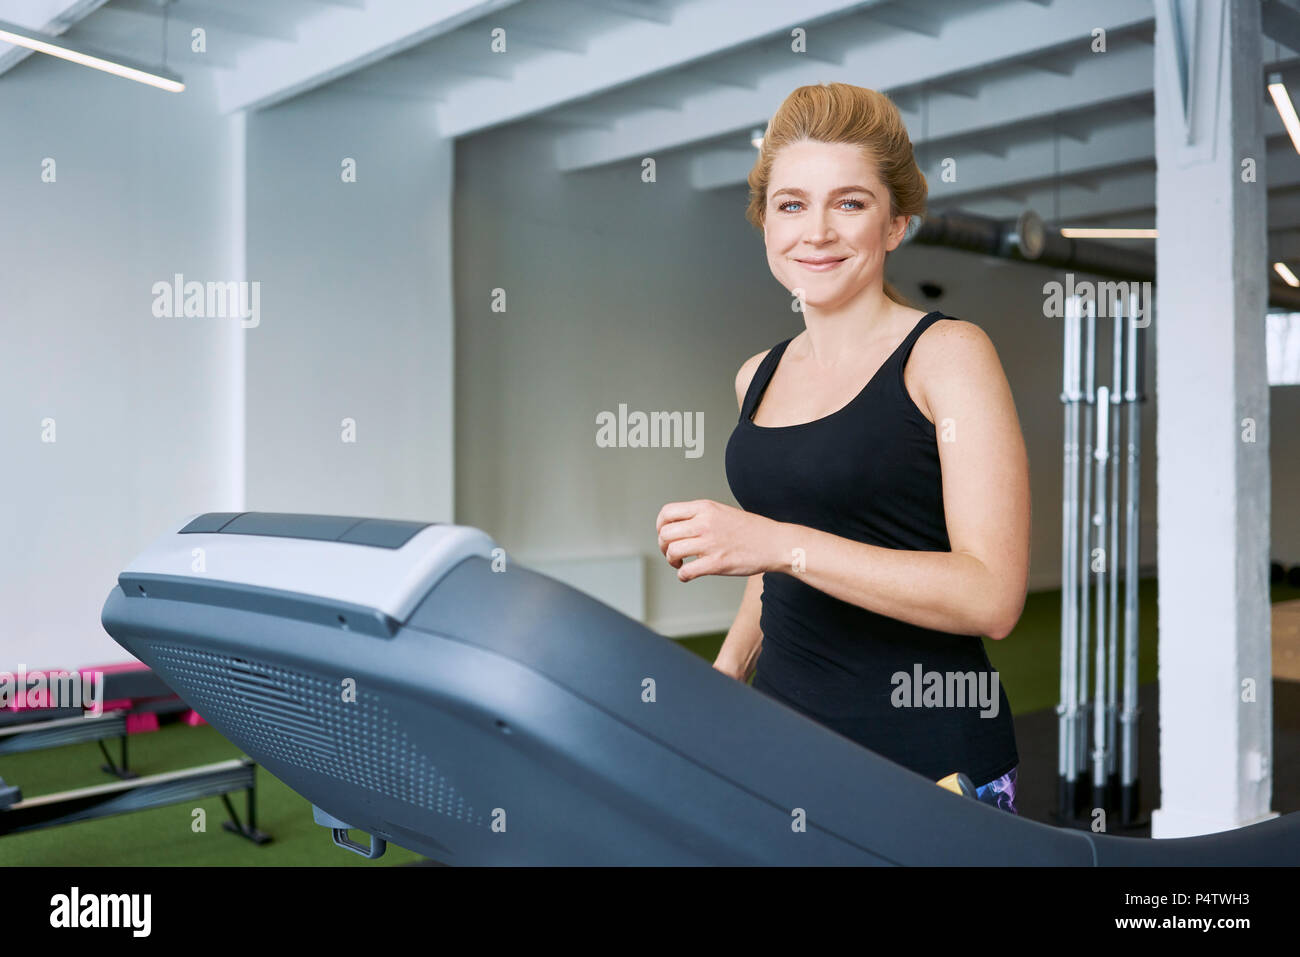 Portrait of smiling woman sur tapis roulant à la salle de sport Banque D'Images